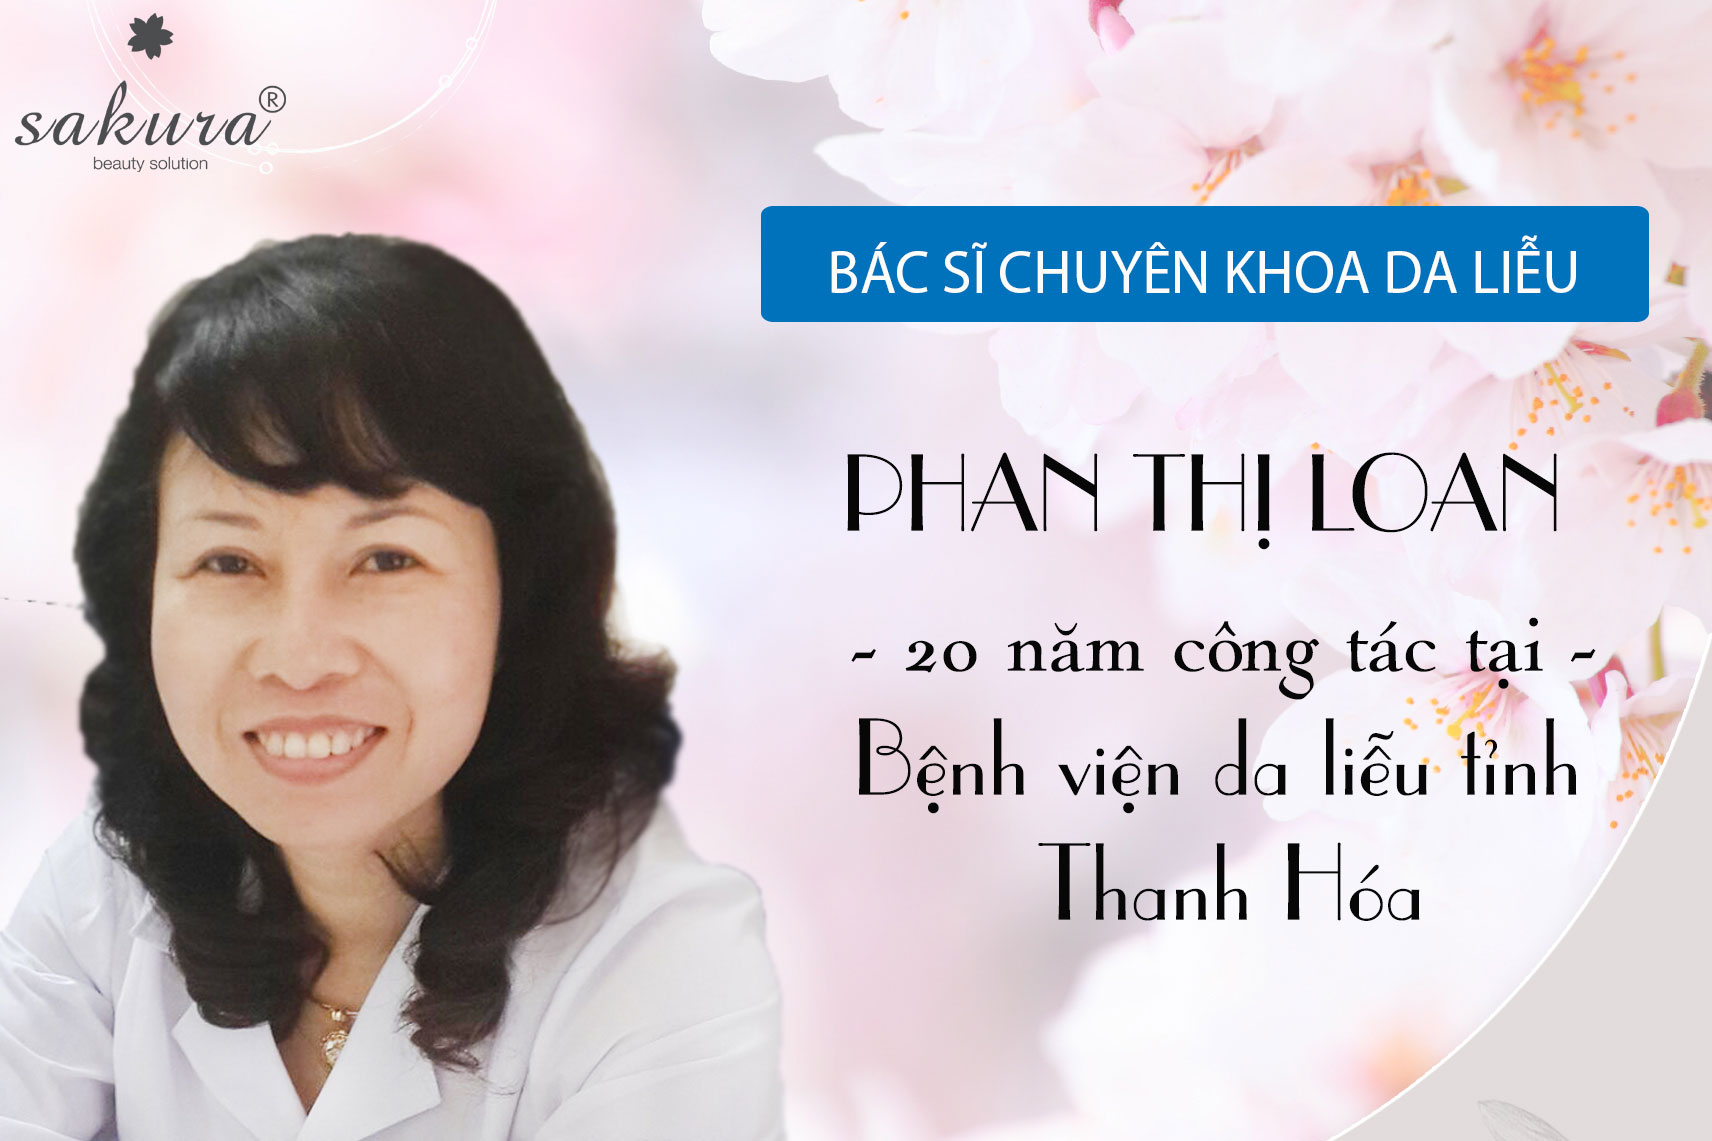 Bác sĩ Phan Thị Loan cố vấn chuyên gia của Sakura tại Thanh Hóa